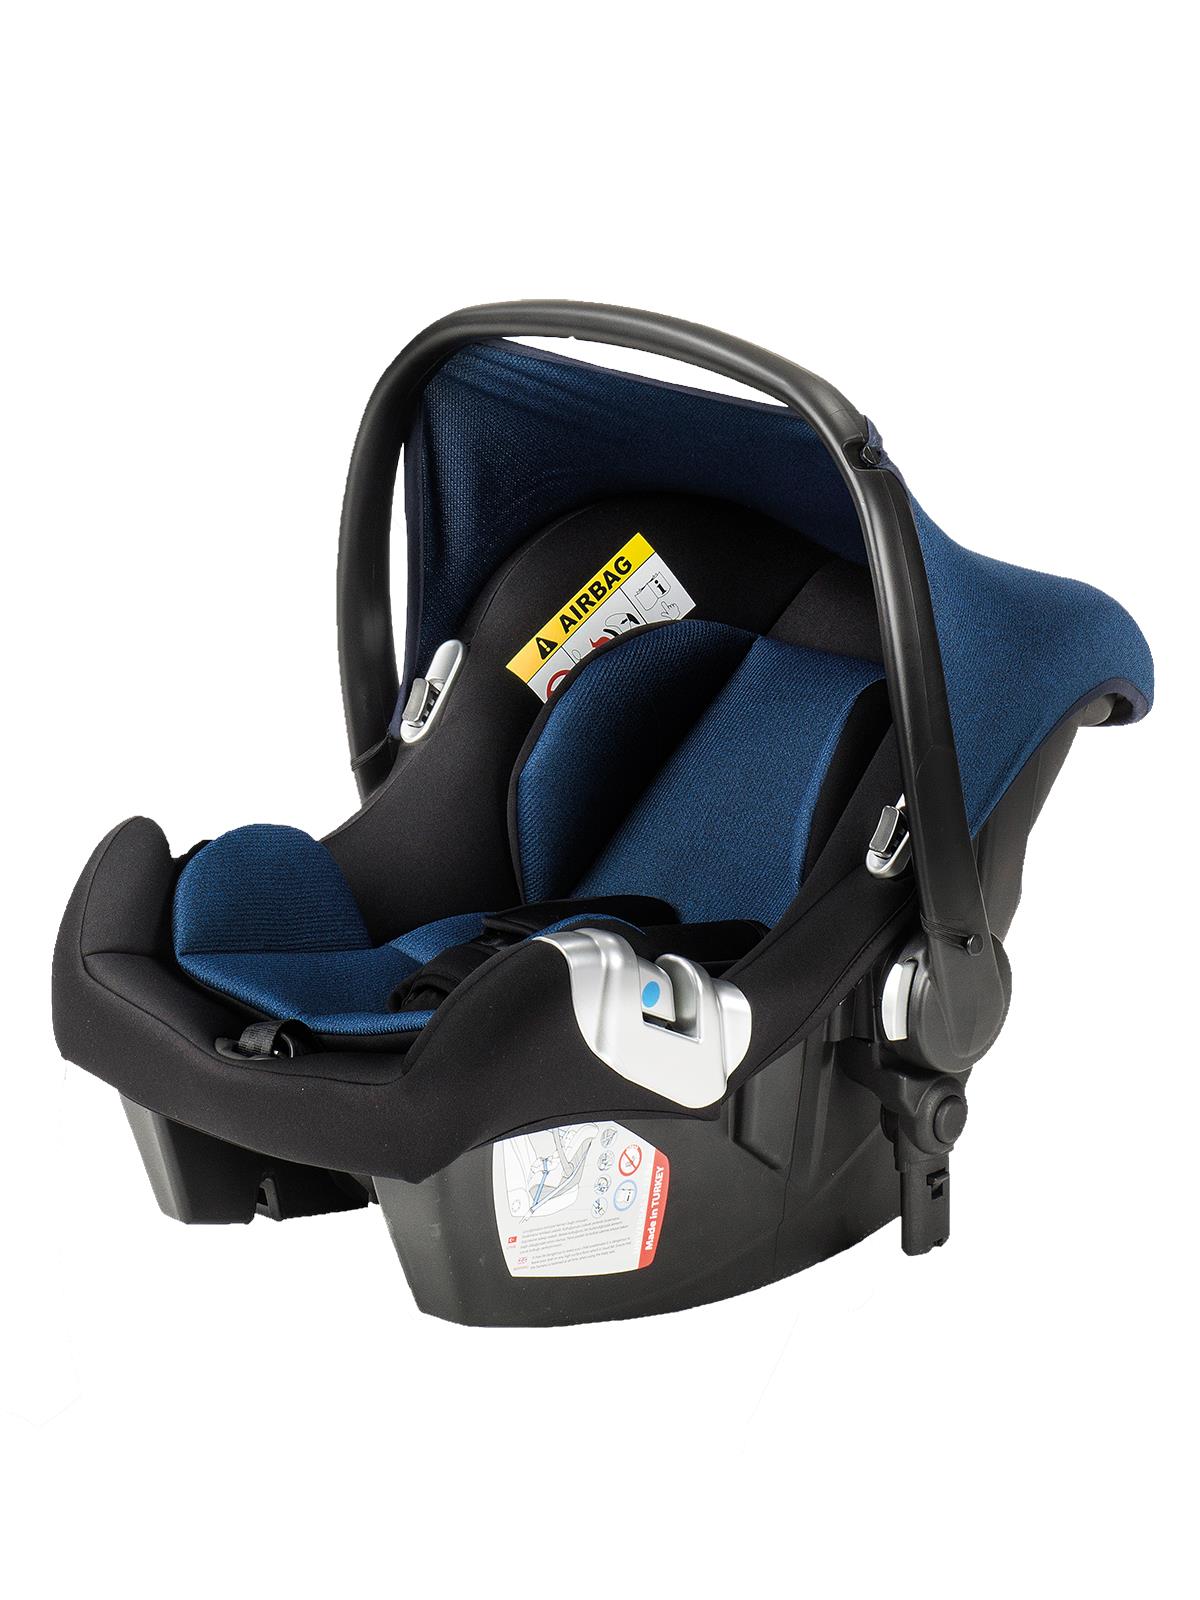 BabyCare Titan Safe Trio Travel Sistem Bebek Arabası Siyah Şase Mavi